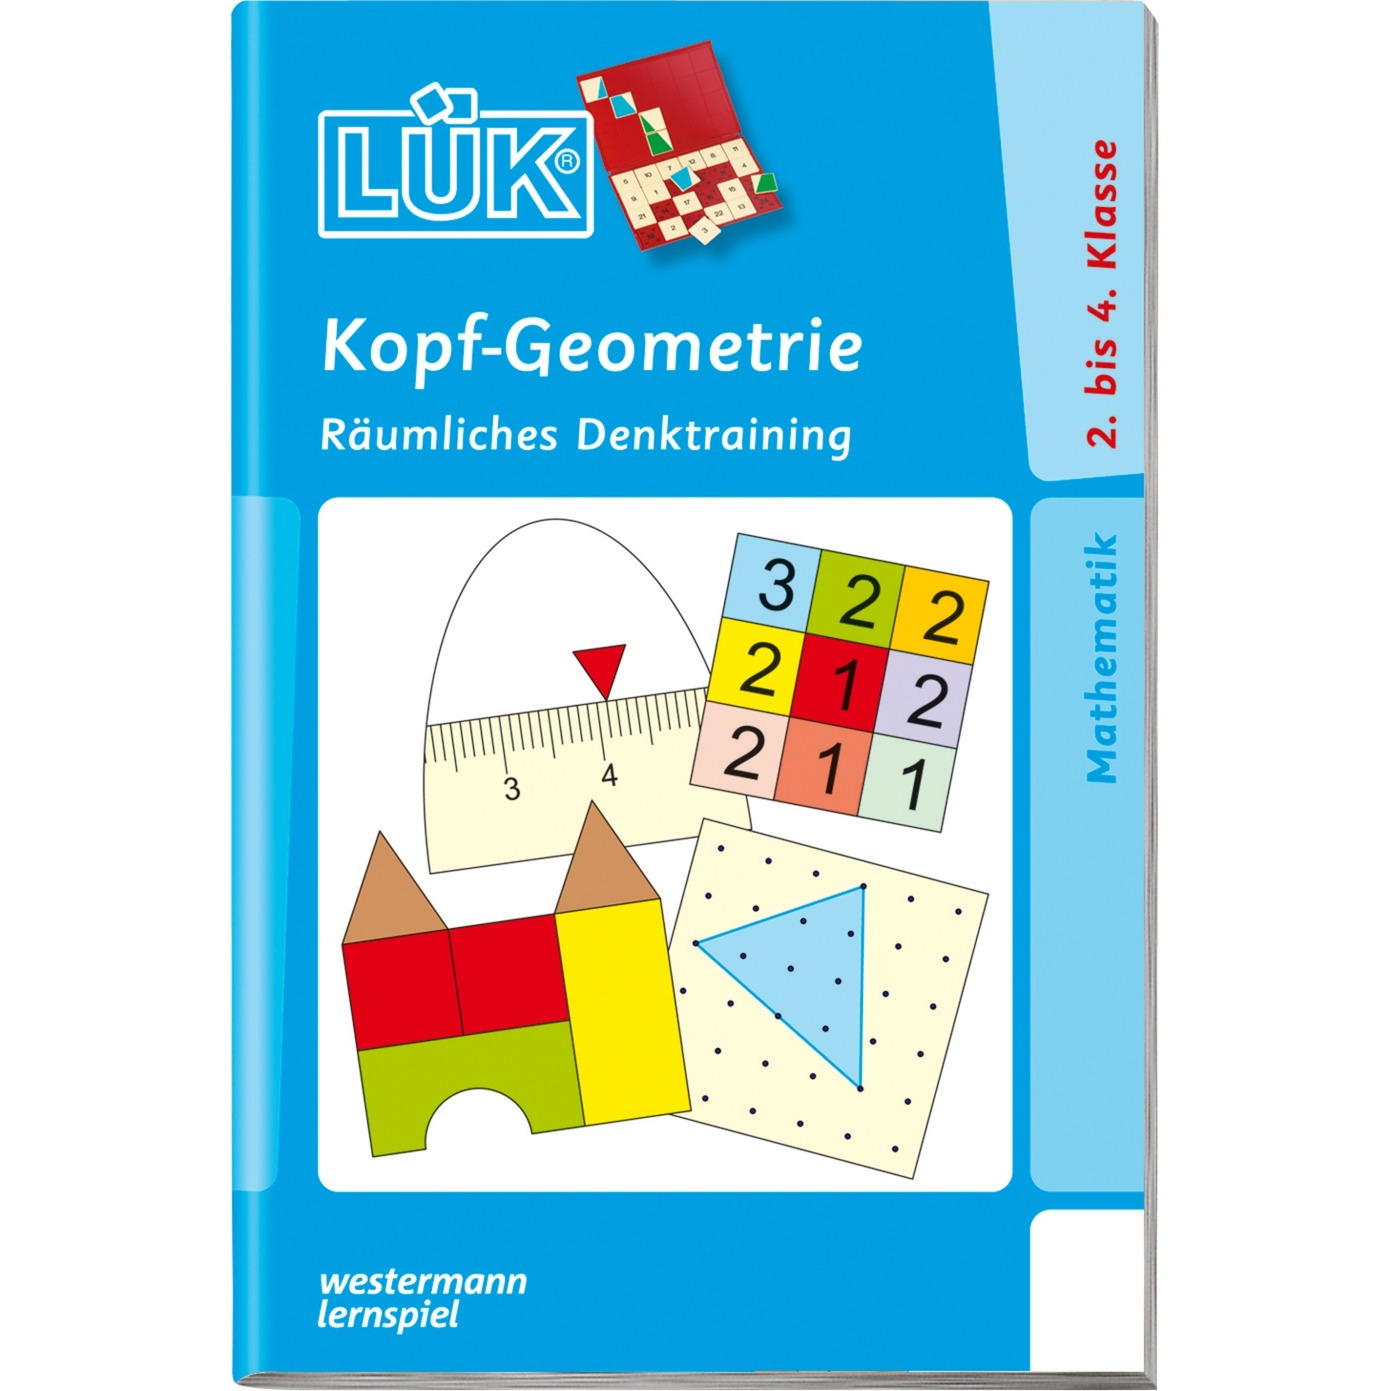 Kopf-Geometrie książka dla dzieci, Książki edukacyjne